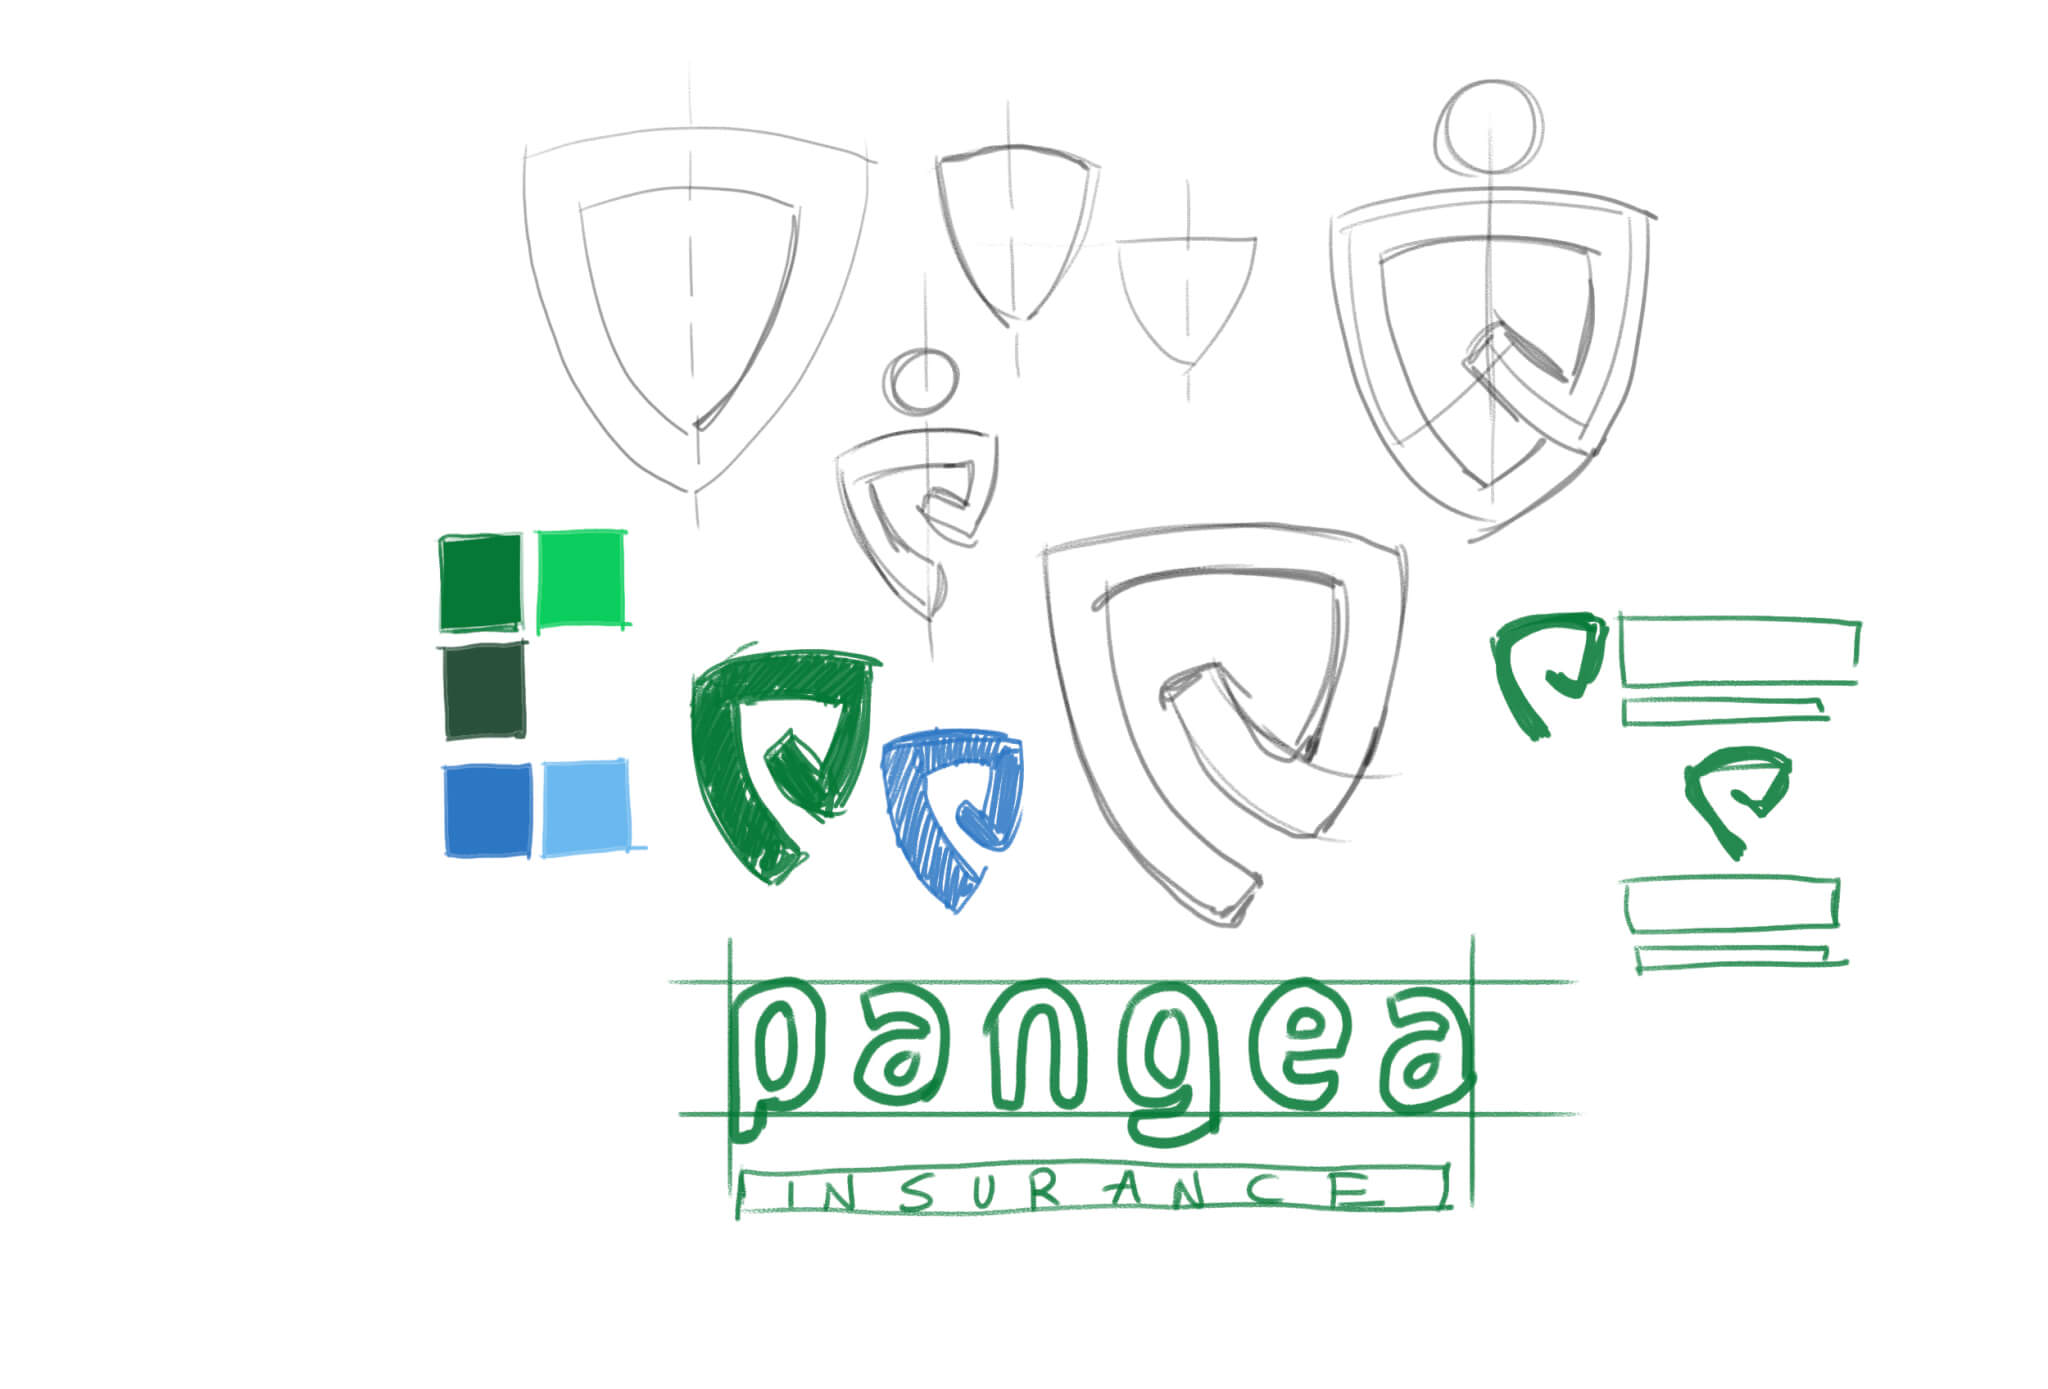 Pangea10